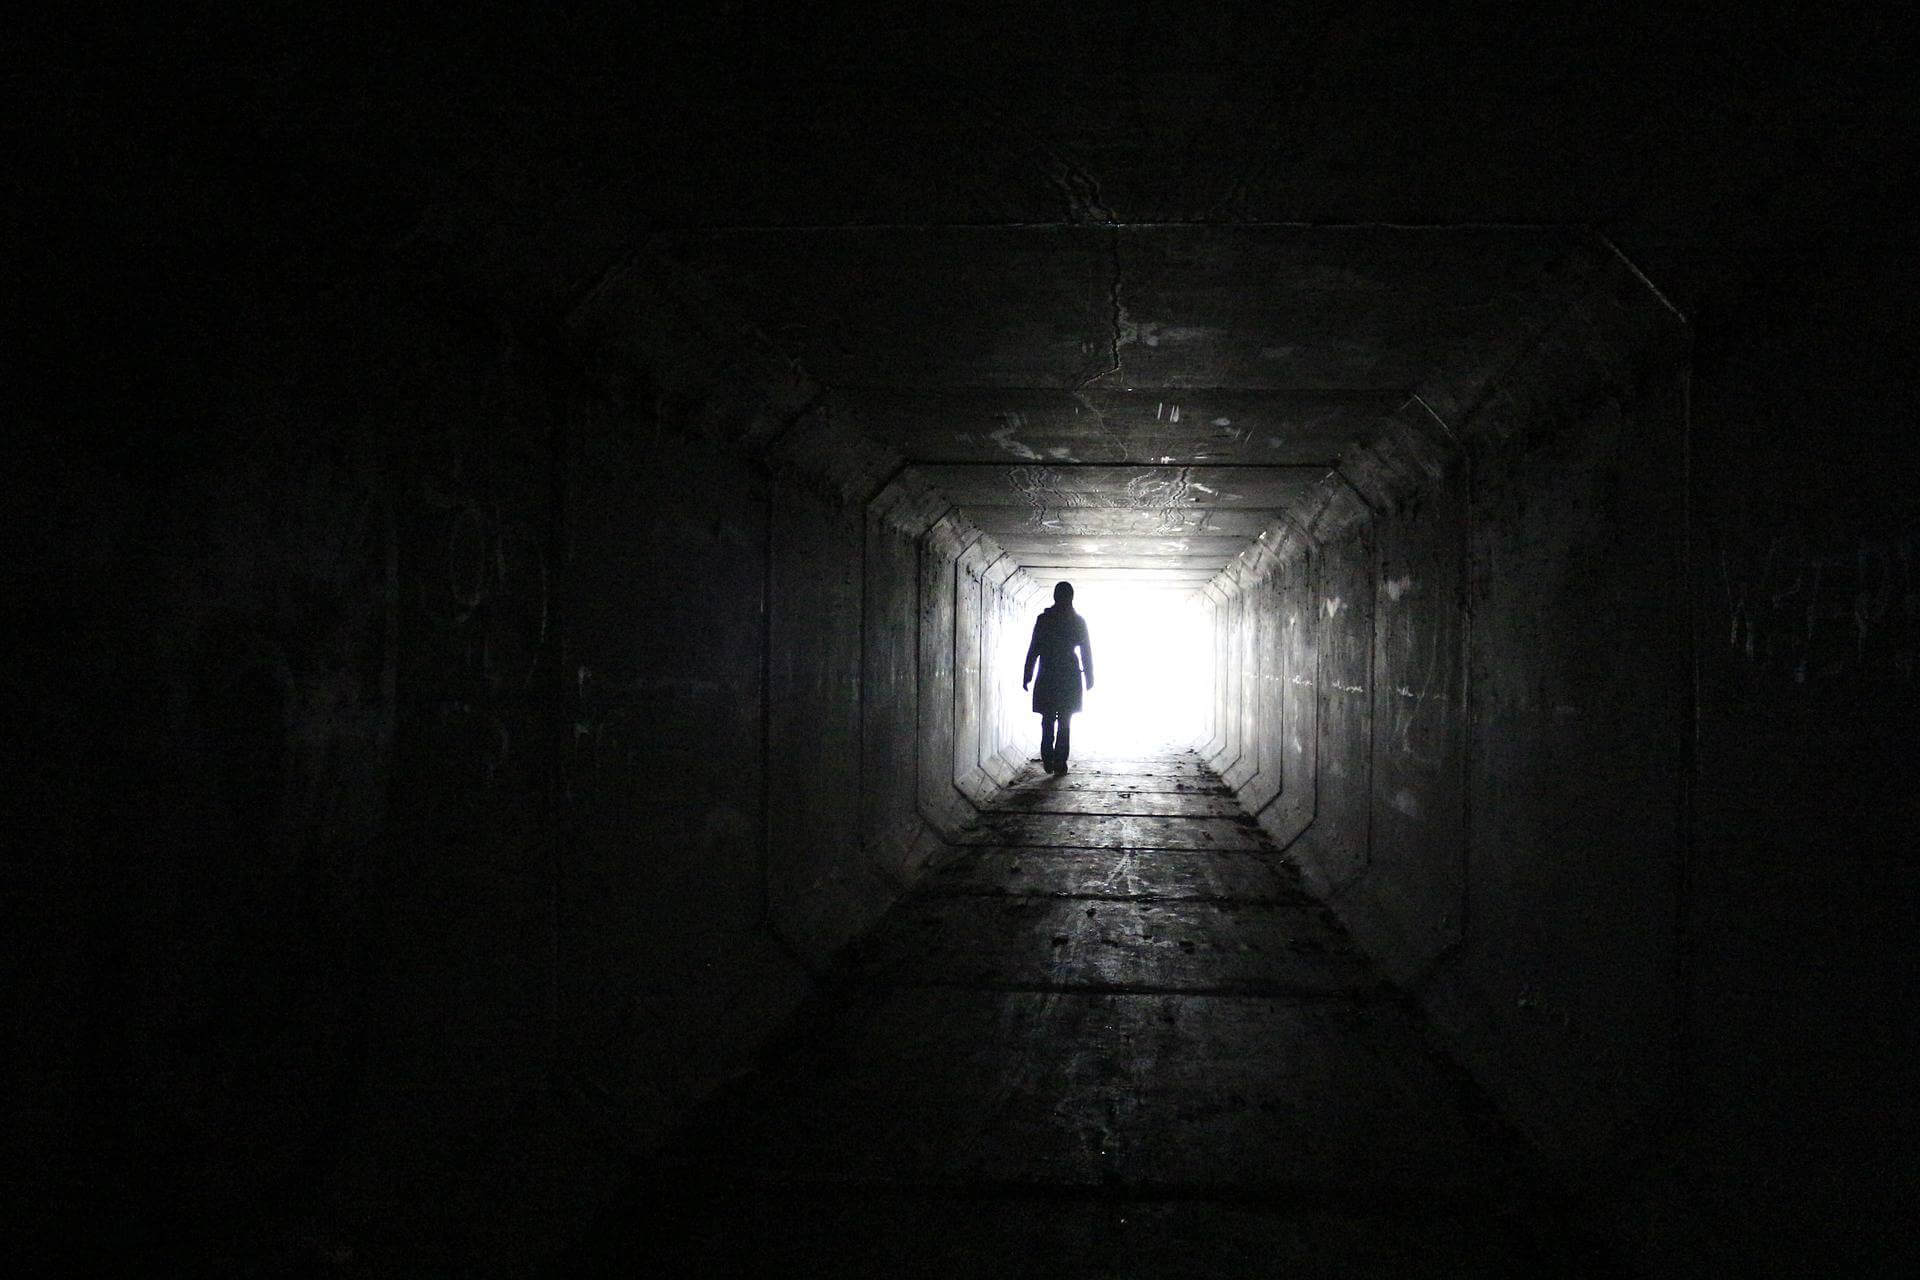 The Light Inside the Tunnel - Al-Fanar Media